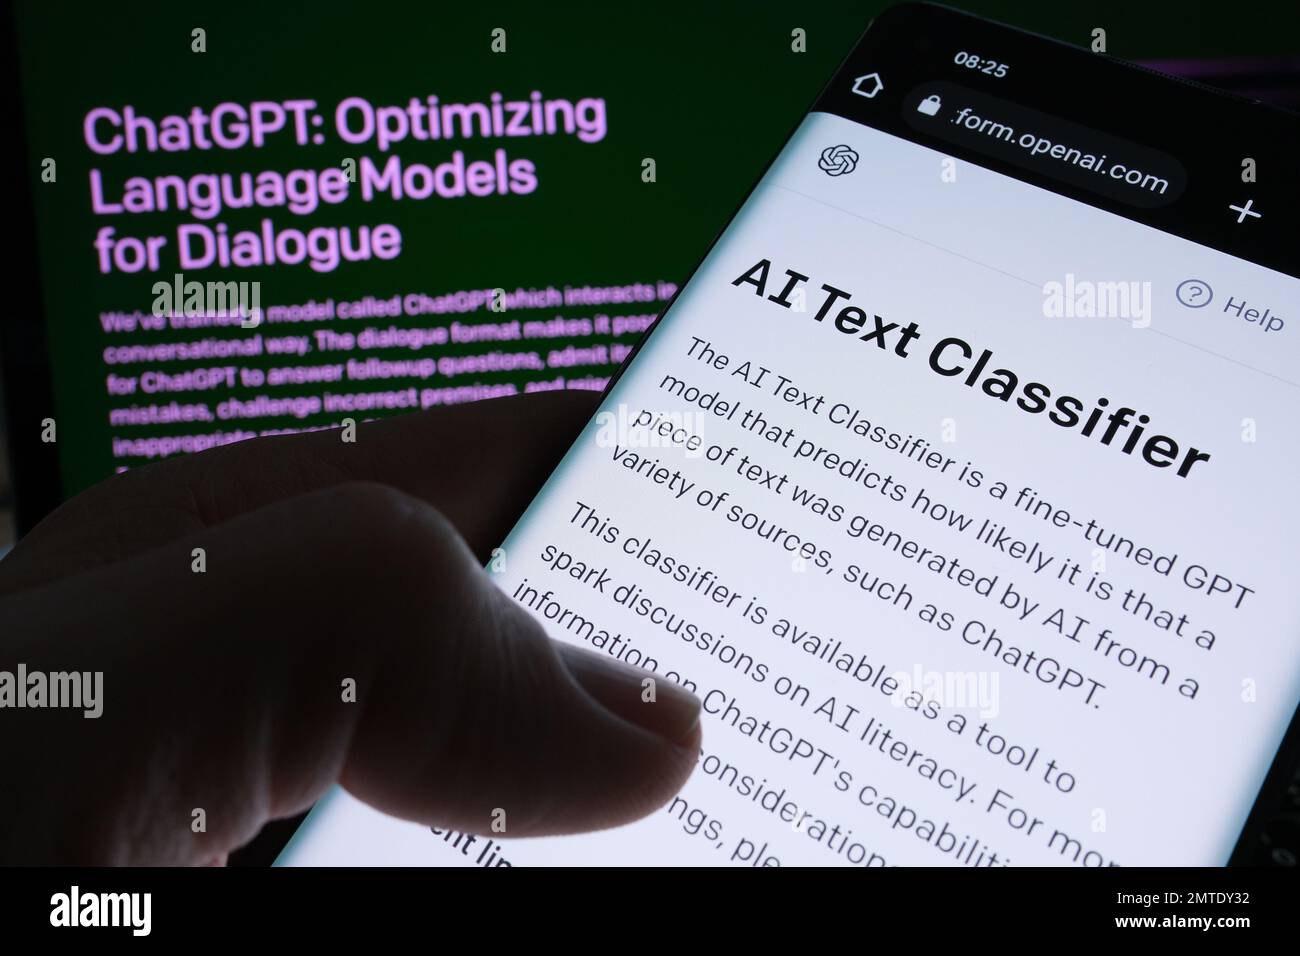 Page Web du logiciel ai Text Classifier affichée sur l'écran du smartphone et page ChatGPT sur un arrière-plan flou. Outil pour la détection de texte écrit ai par OUVRIR Un Banque D'Images